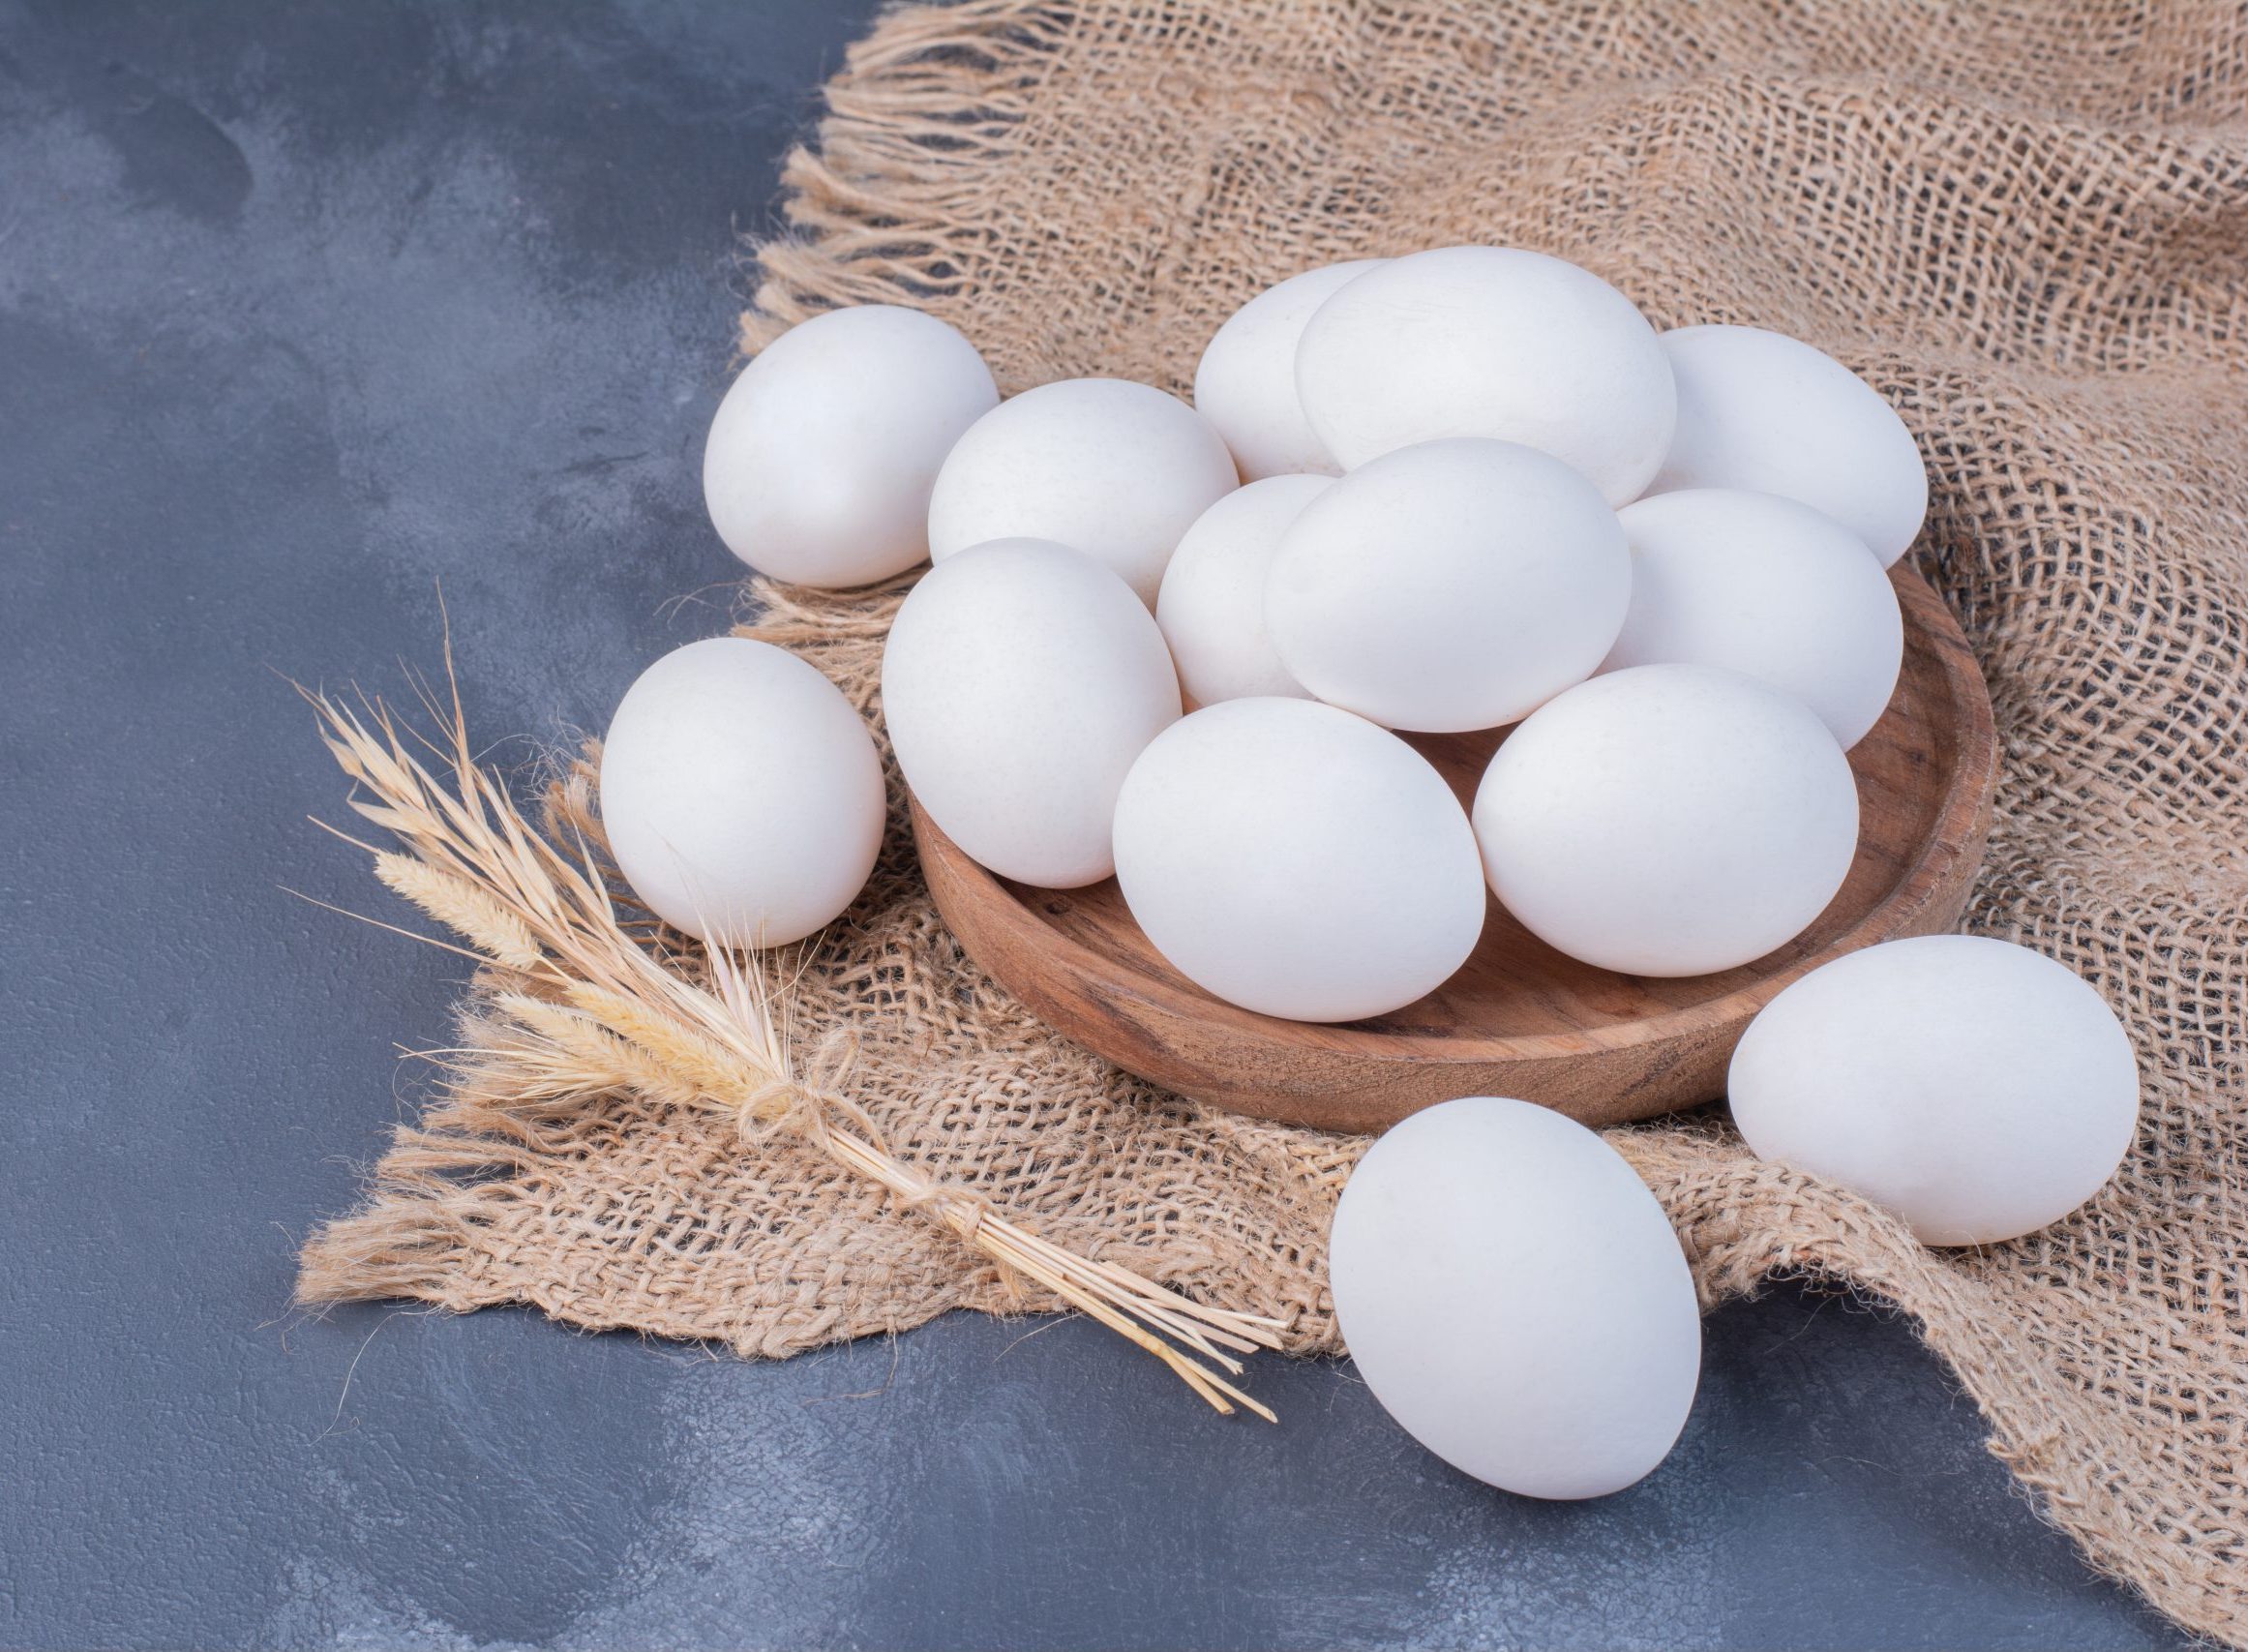 Россельхознадзор проконтролировал очередные поставки импортных пищевых яиц